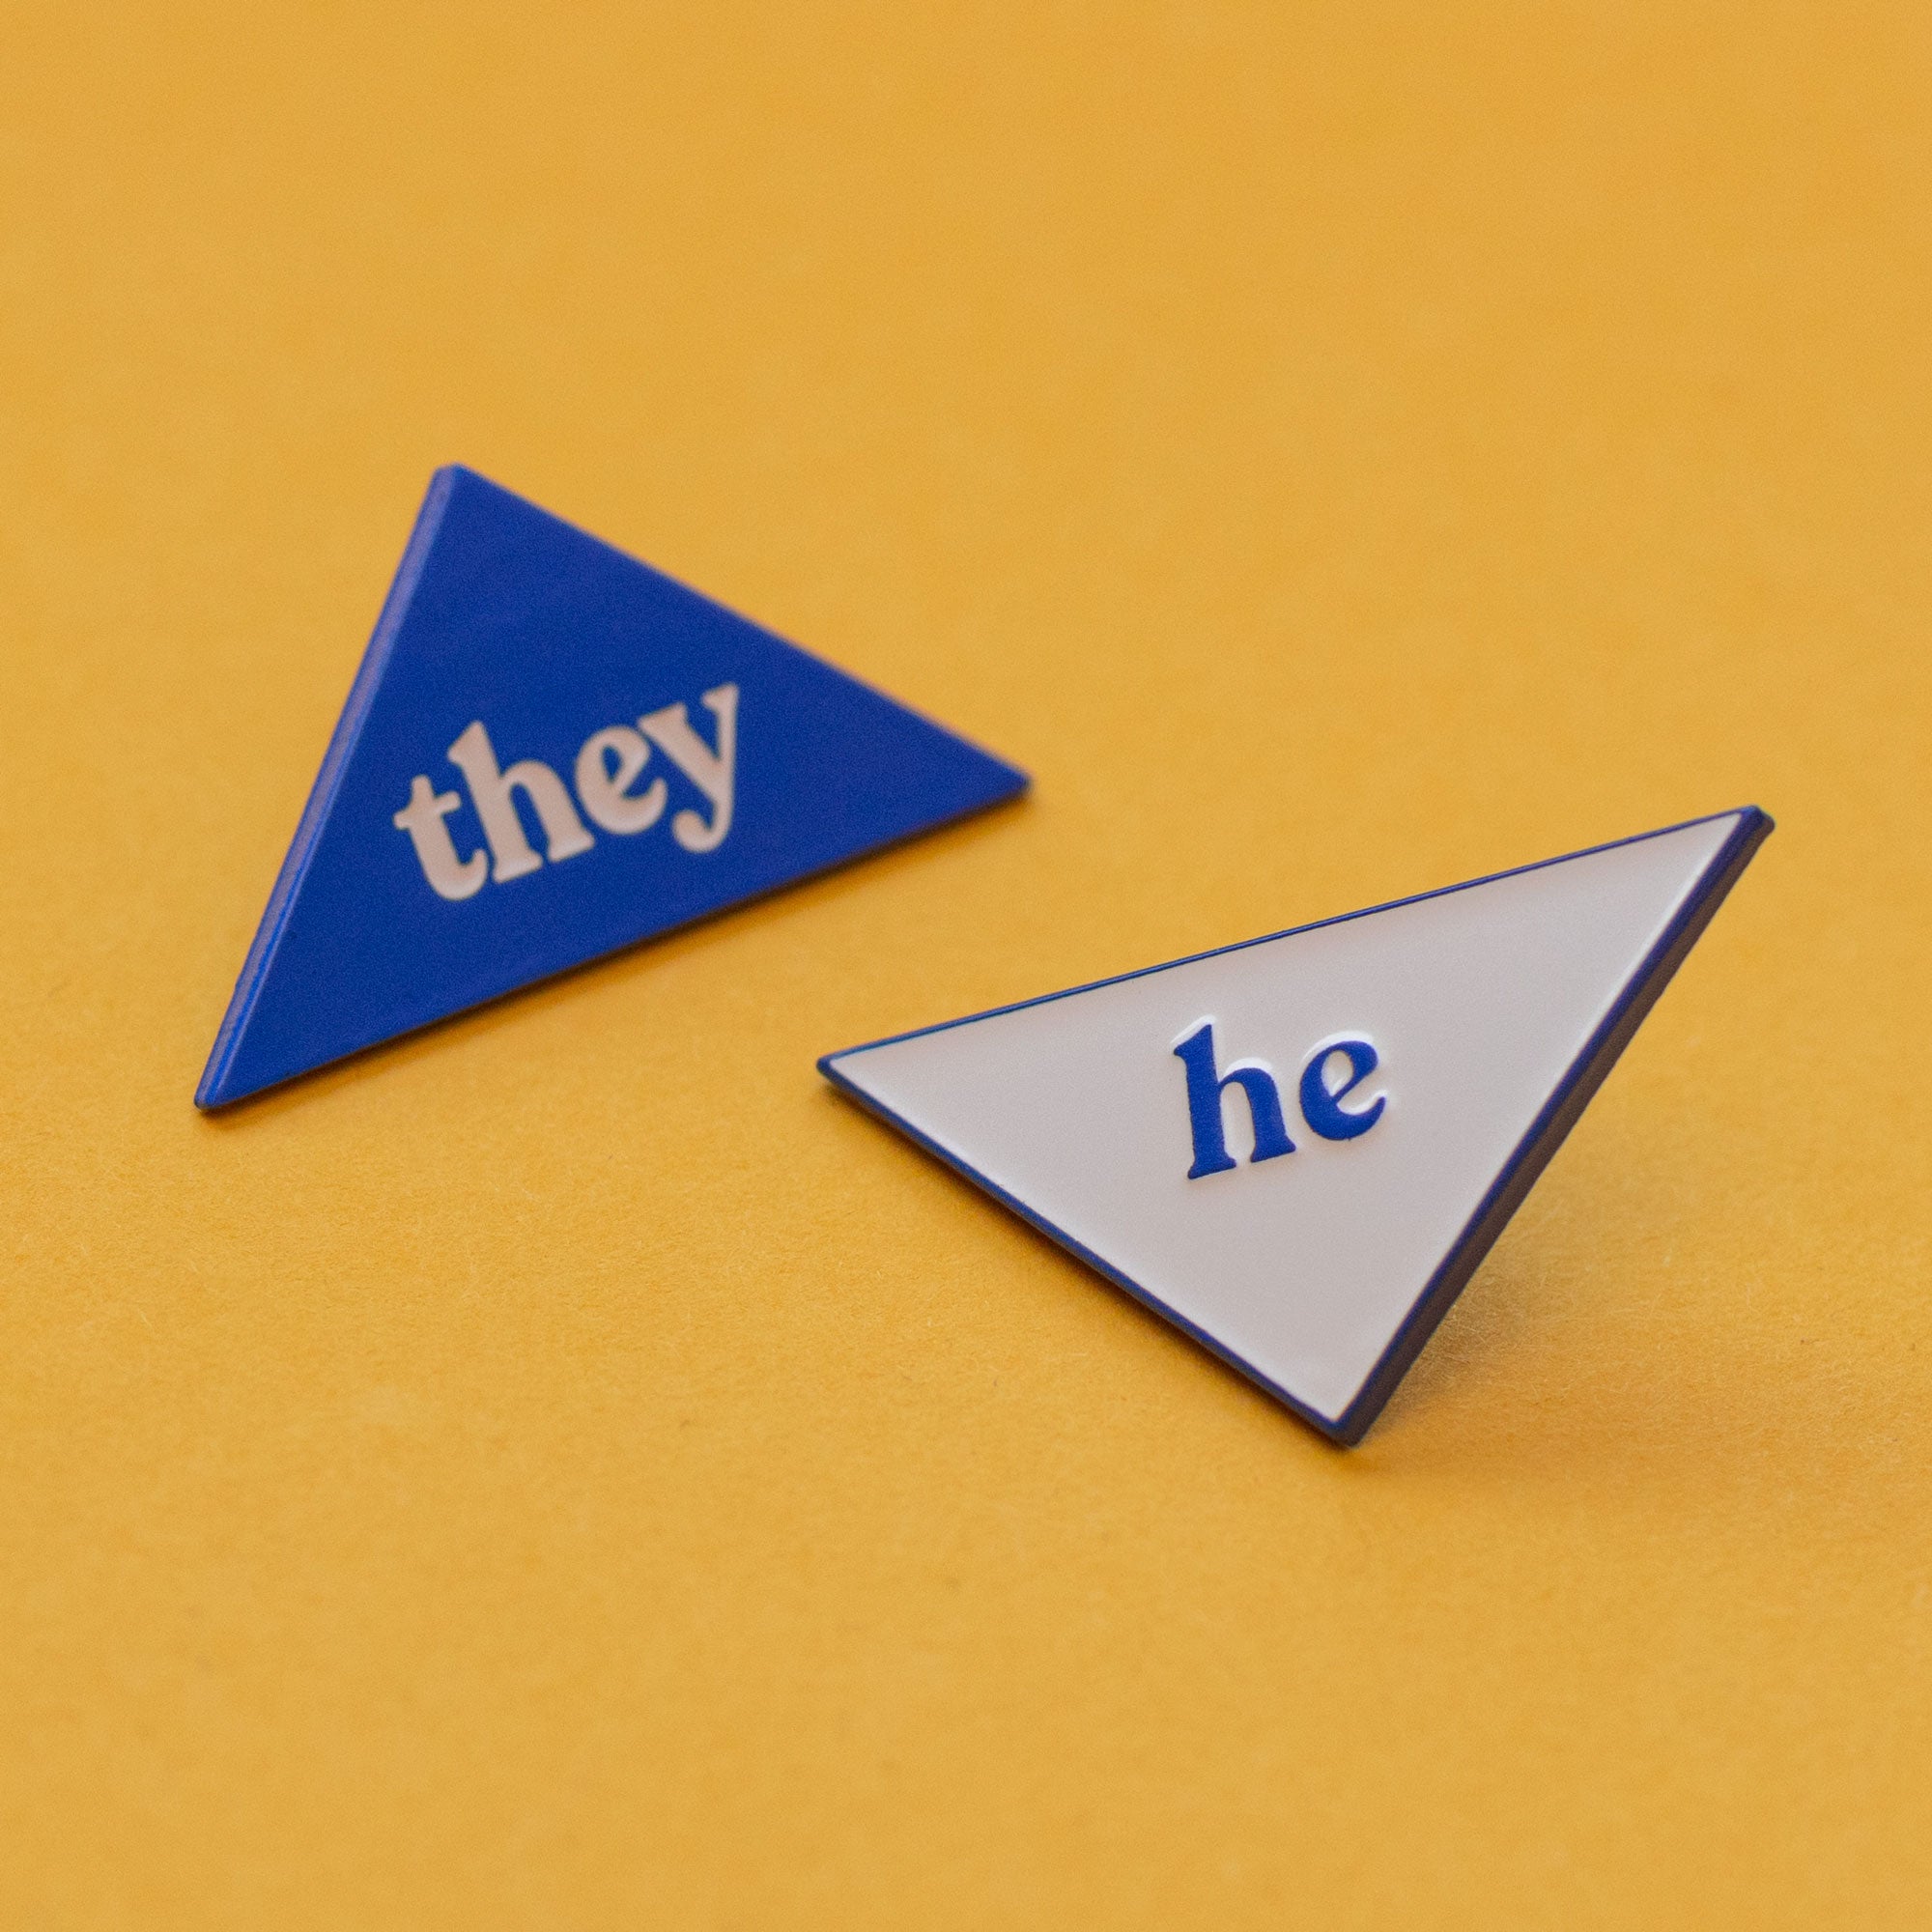 He - Pronouns Combo Enamel Pins - Blue - Part 2